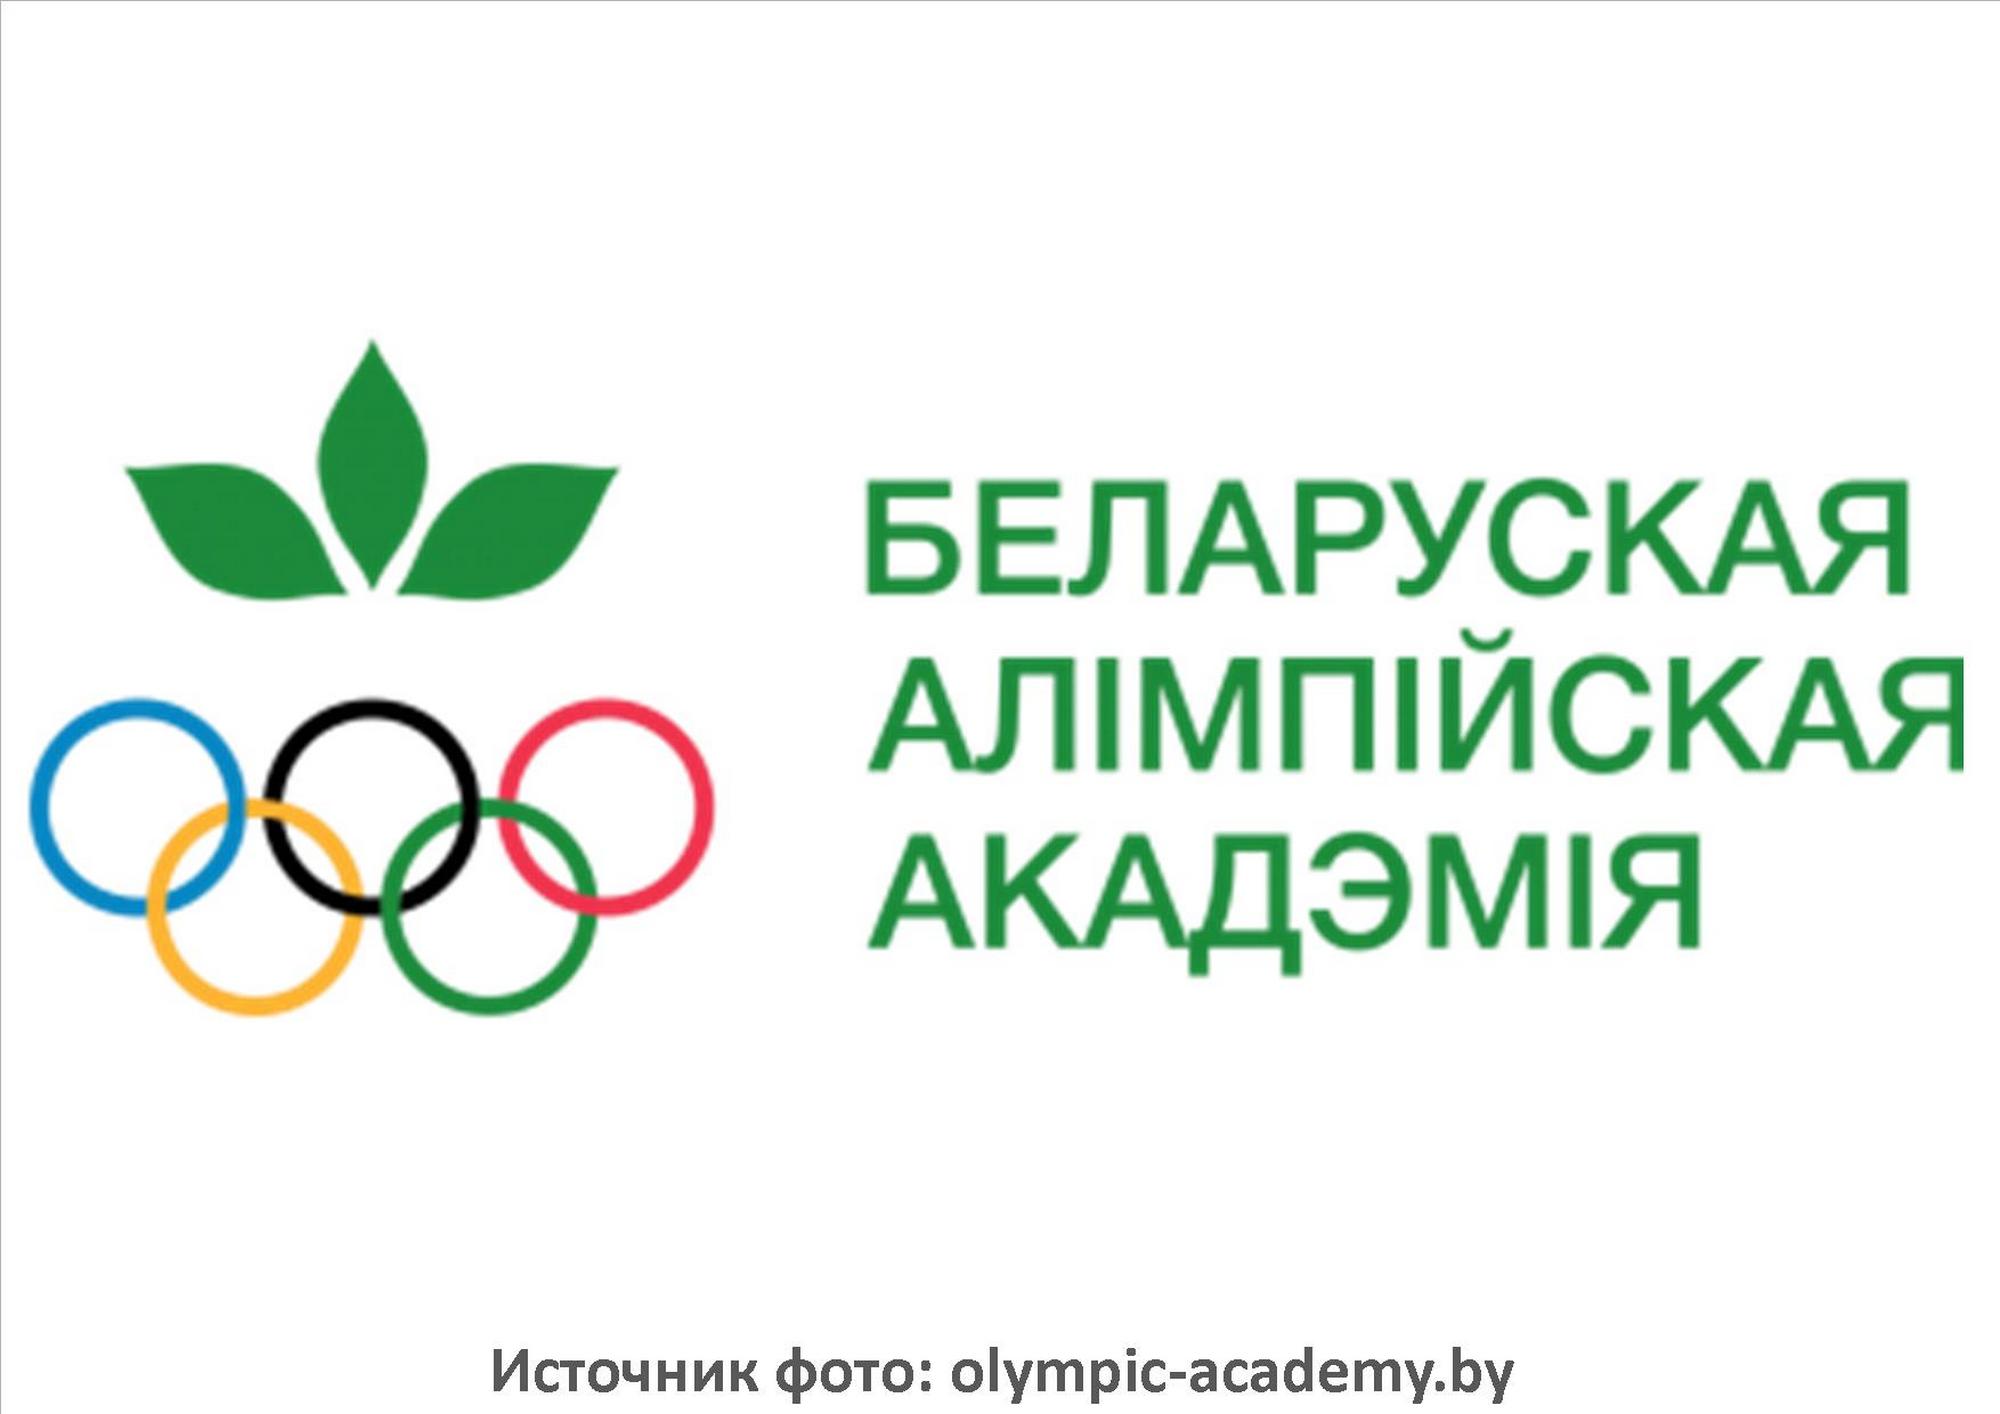 Источник фото: olympic-academy.by